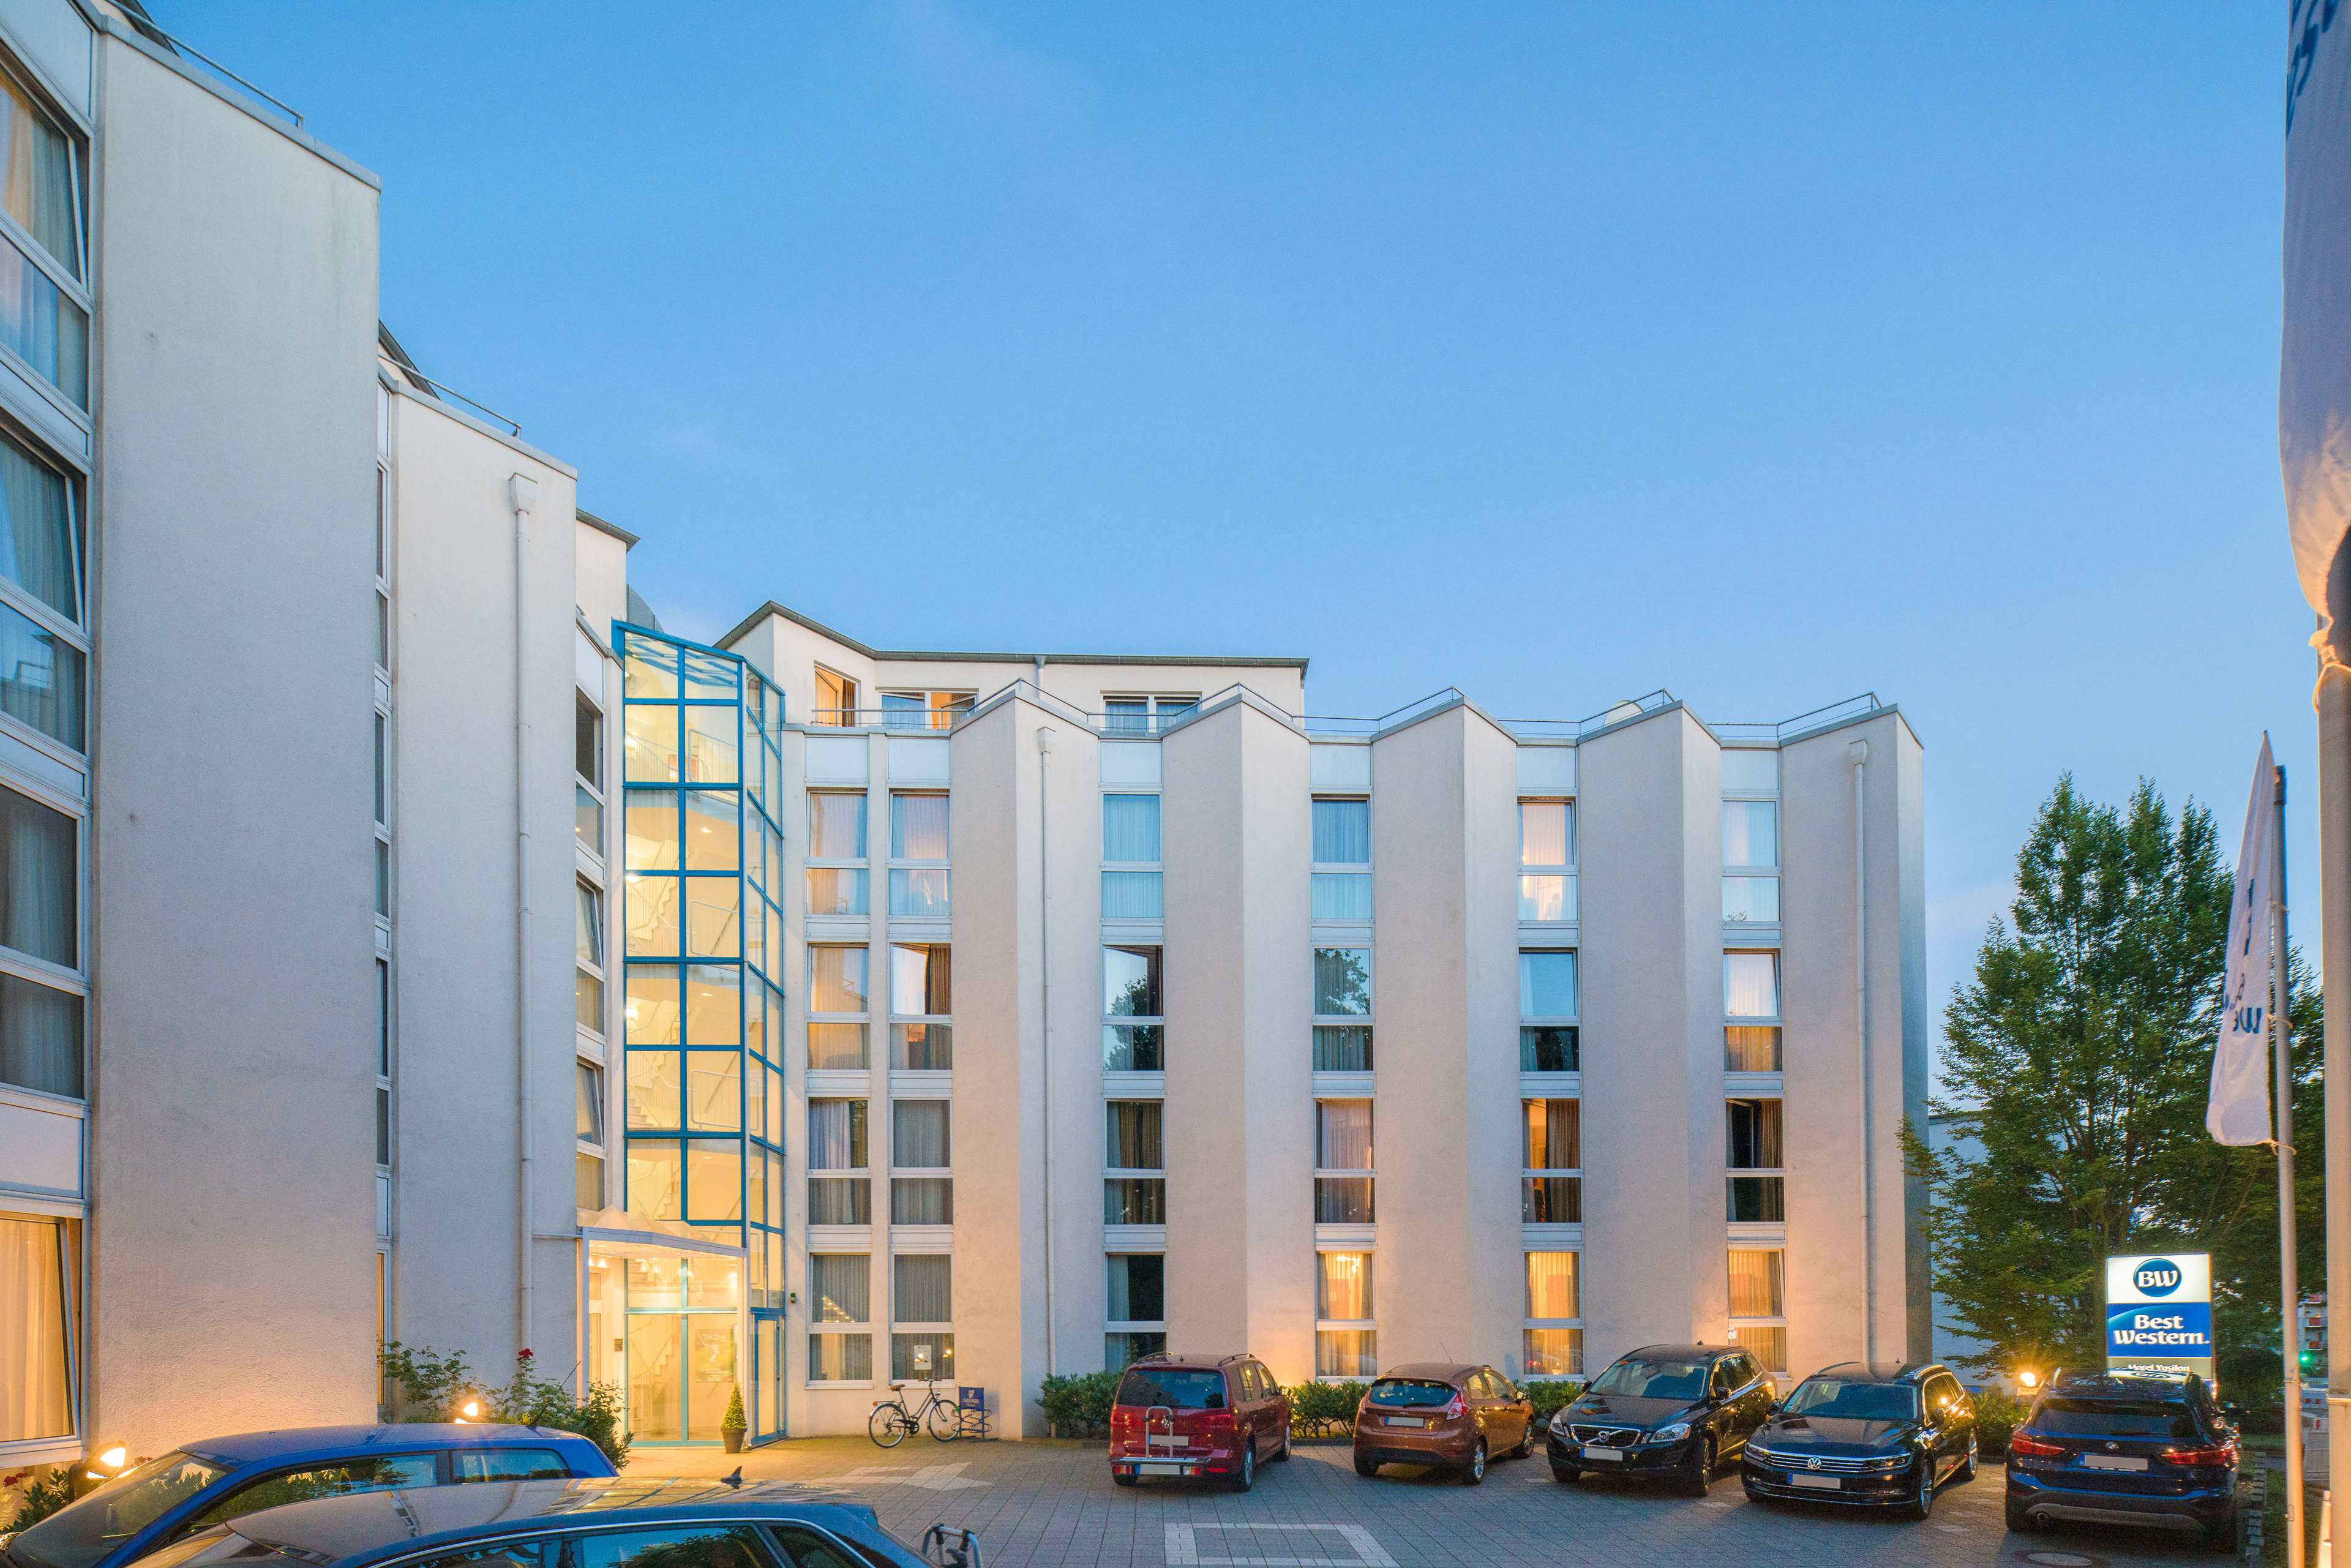 Best Western Hotel Ypsilon, Mueller-Breslau-Strasse 18-20 in Essen